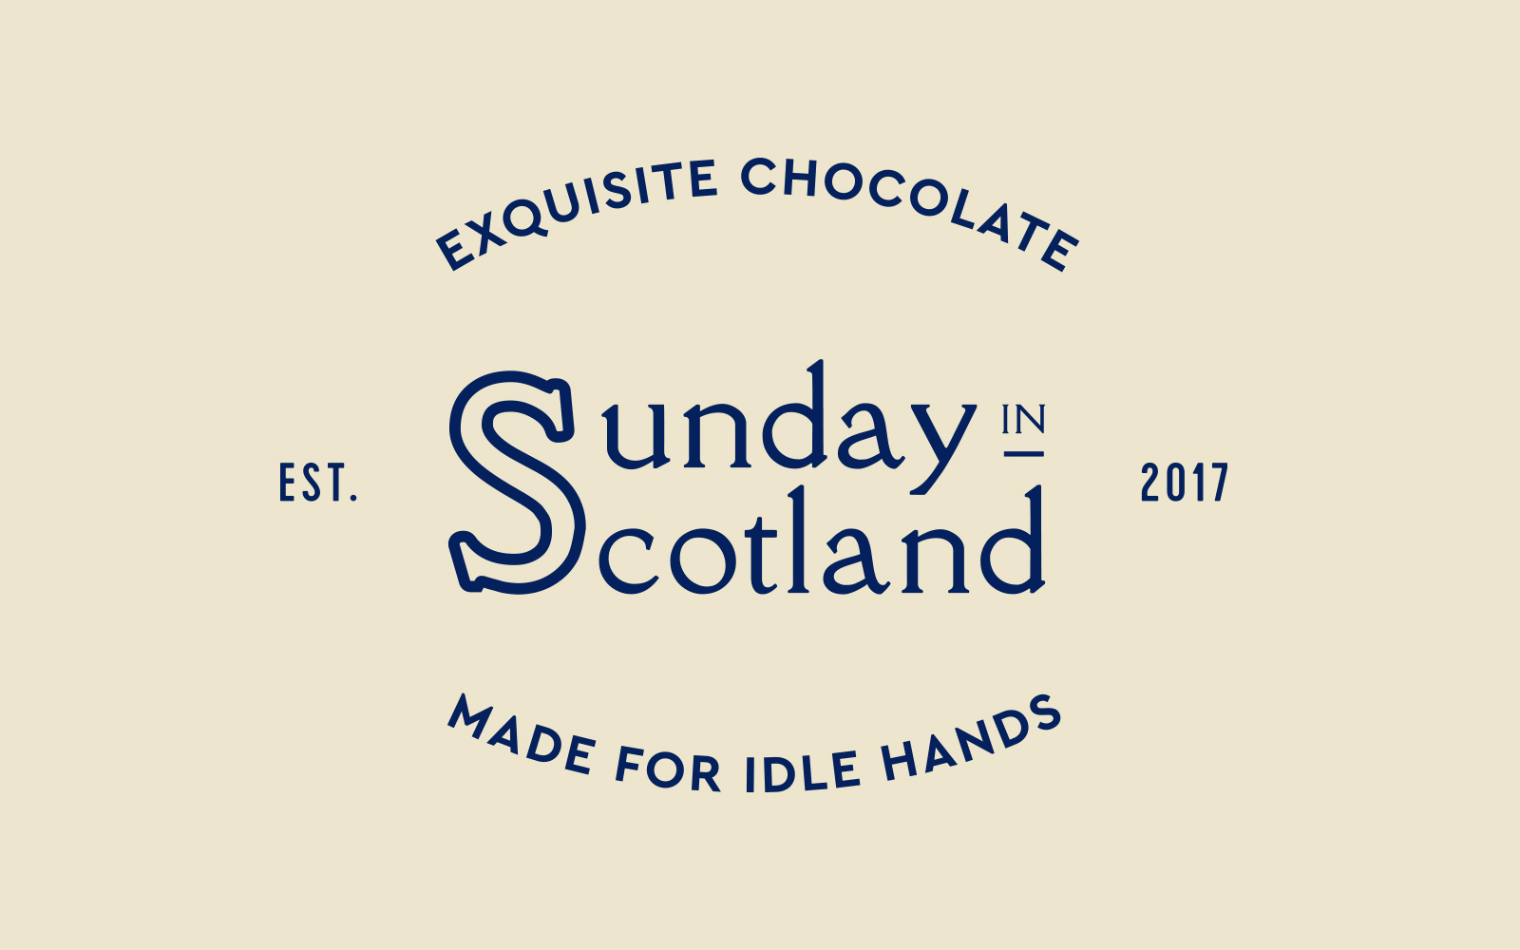 Sunday in Scotland | Steve Edge Design